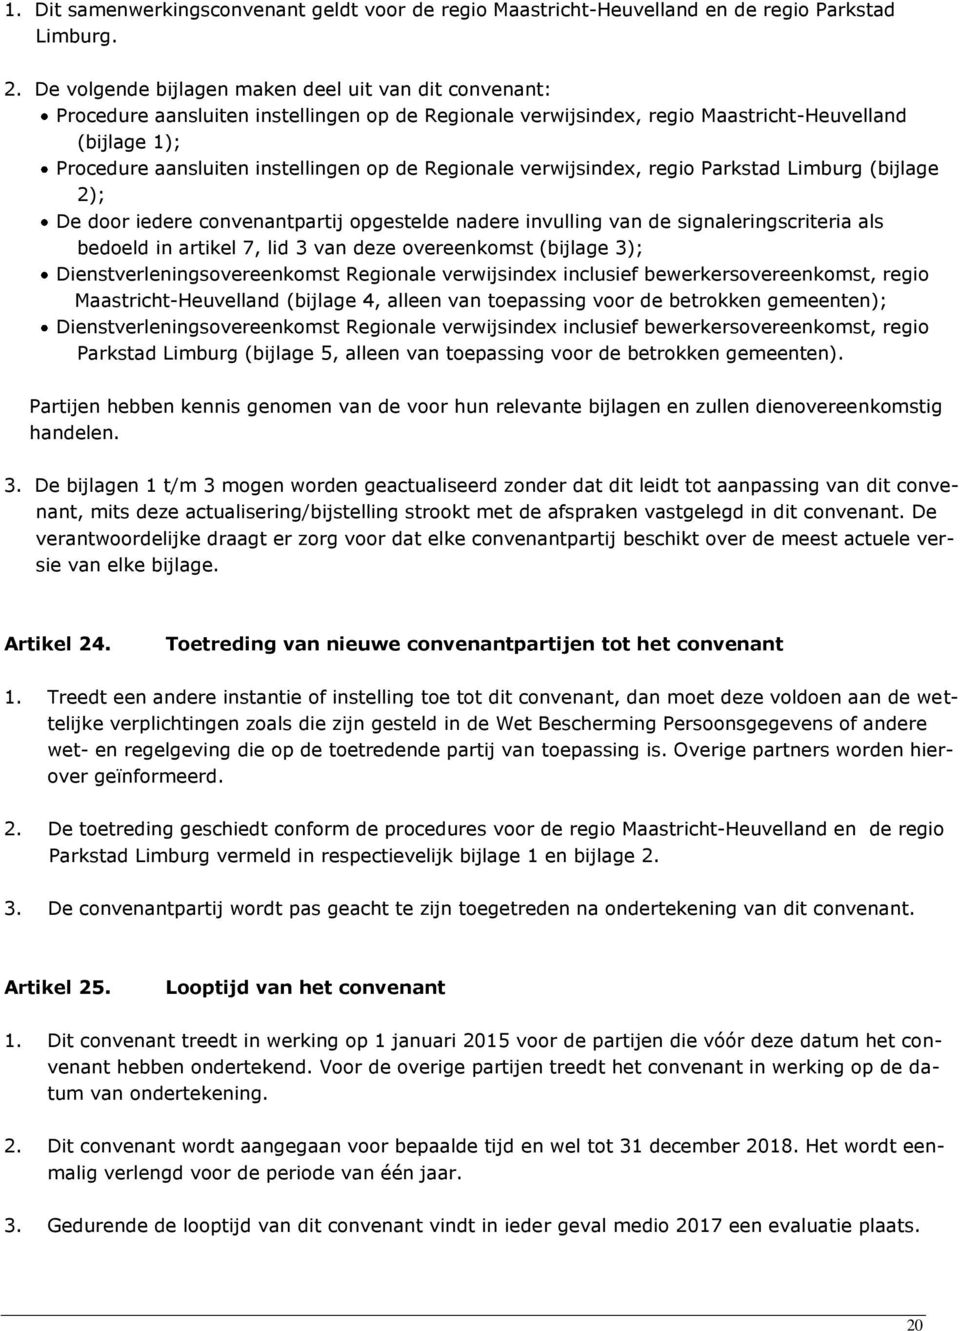 Regionale verwijsindex, regio Parkstad Limburg (bijlage 2); De door iedere convenantpartij opgestelde nadere invulling van de signaleringscriteria als bedoeld in artikel 7, lid 3 van deze